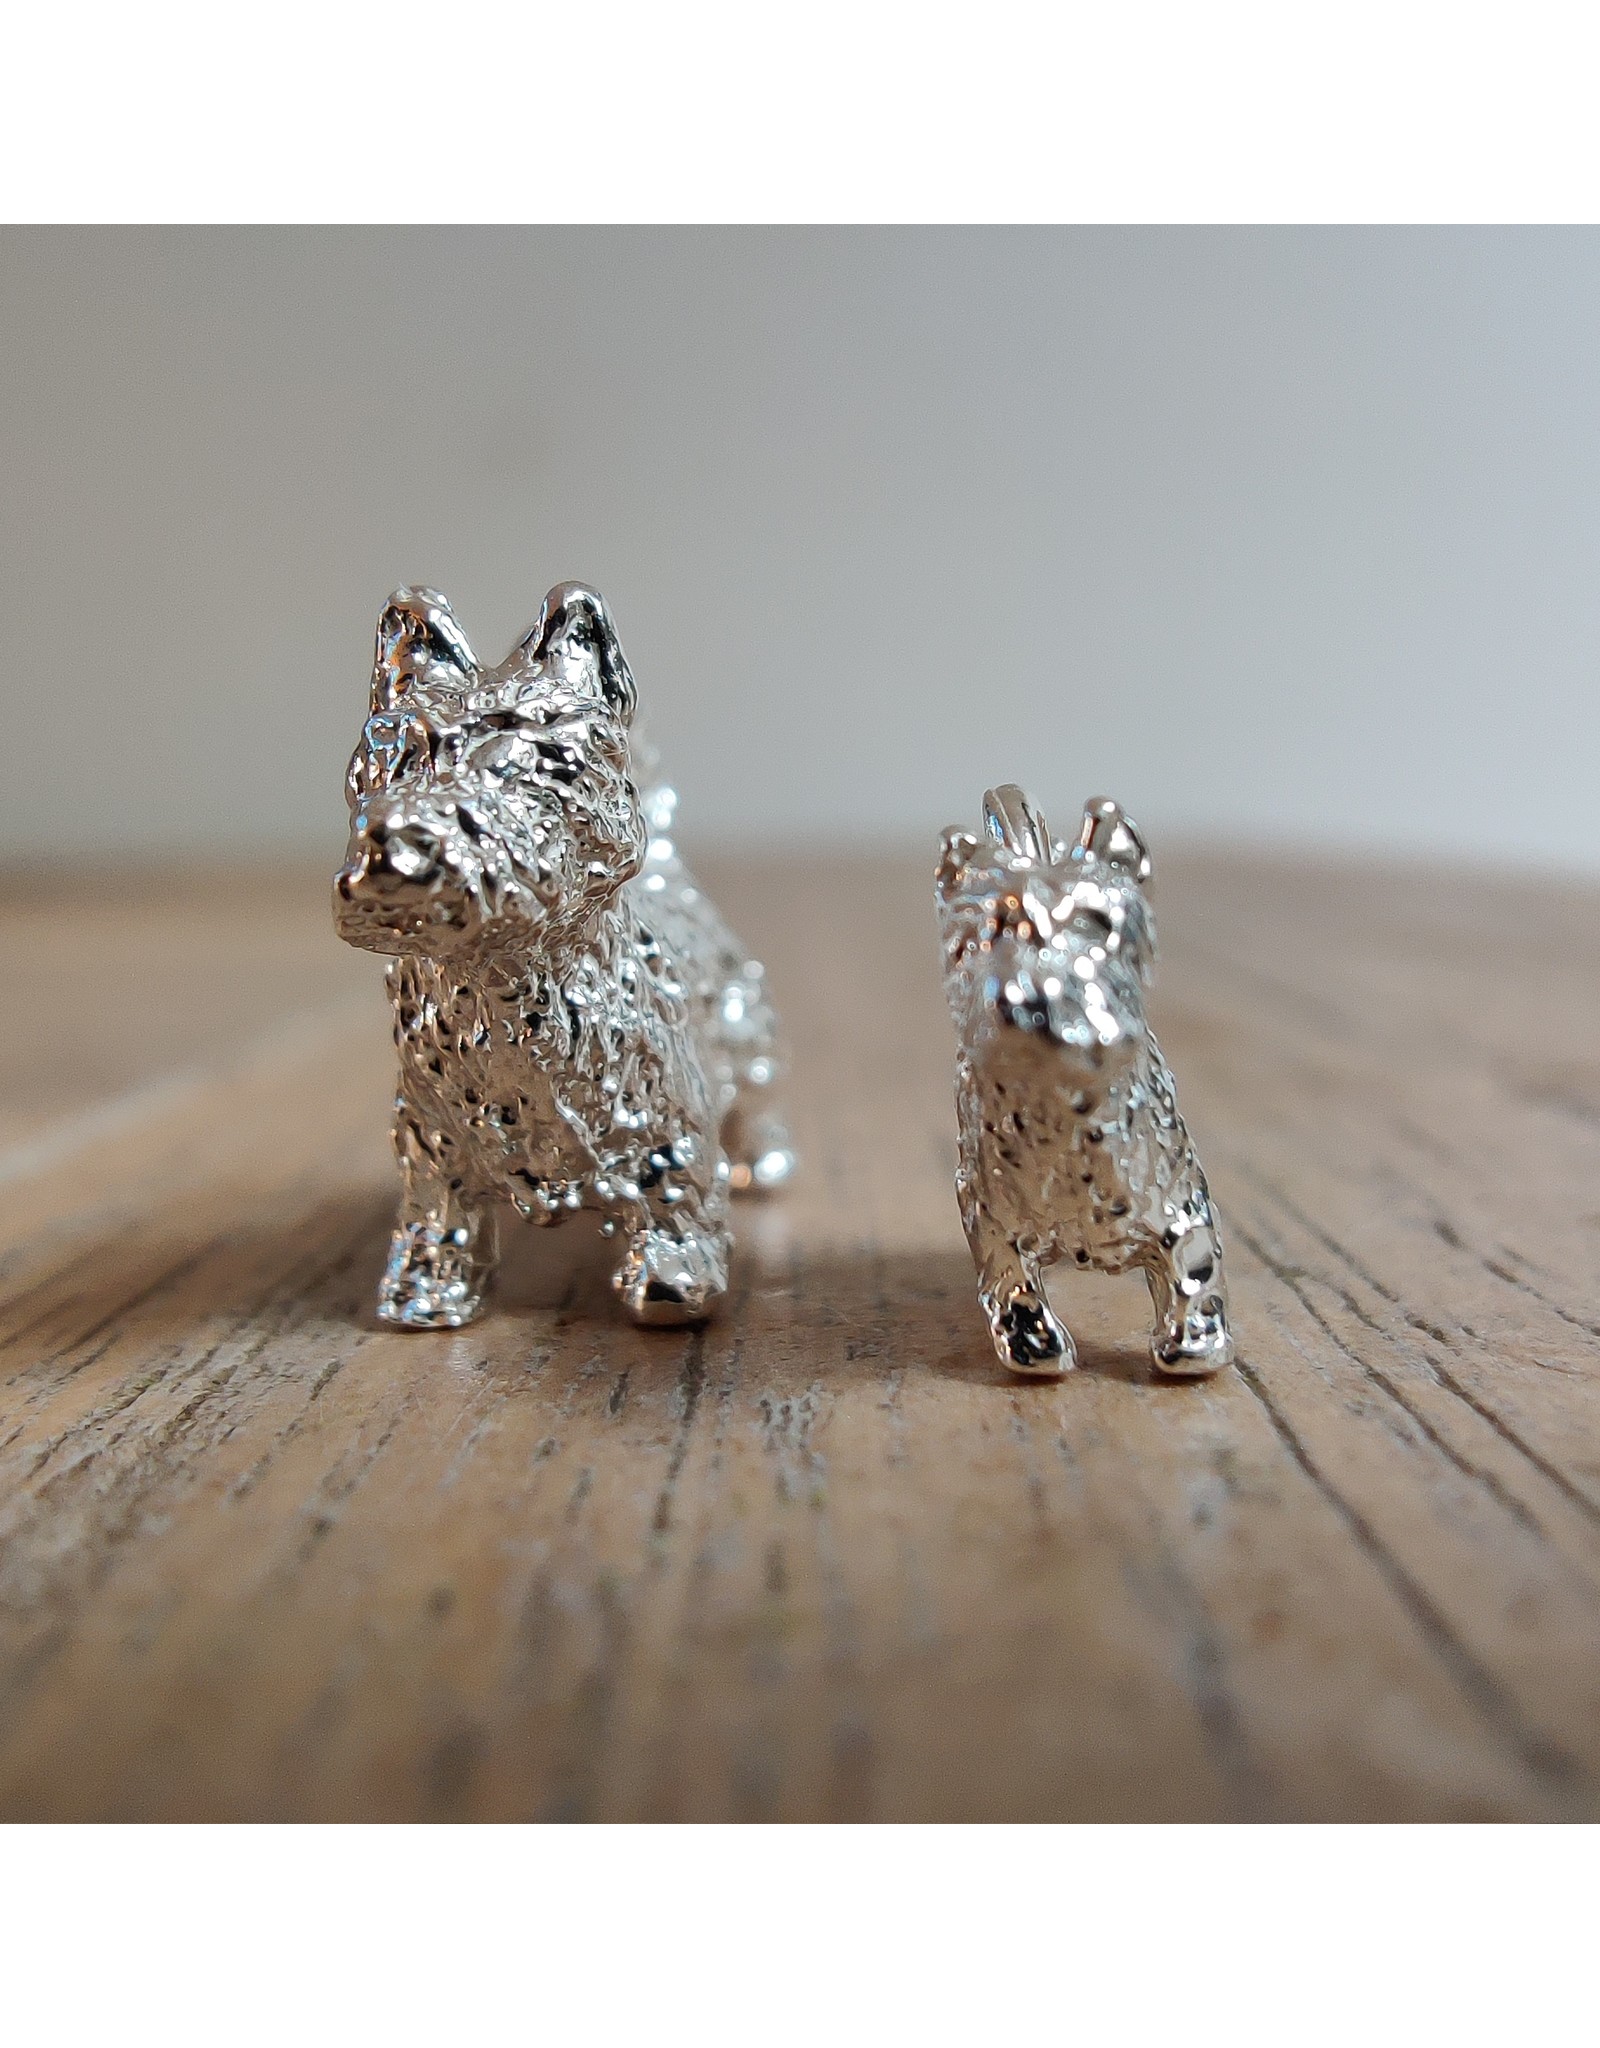 Handmade by Hanneke Weigel Sterling silver Norwich terrier